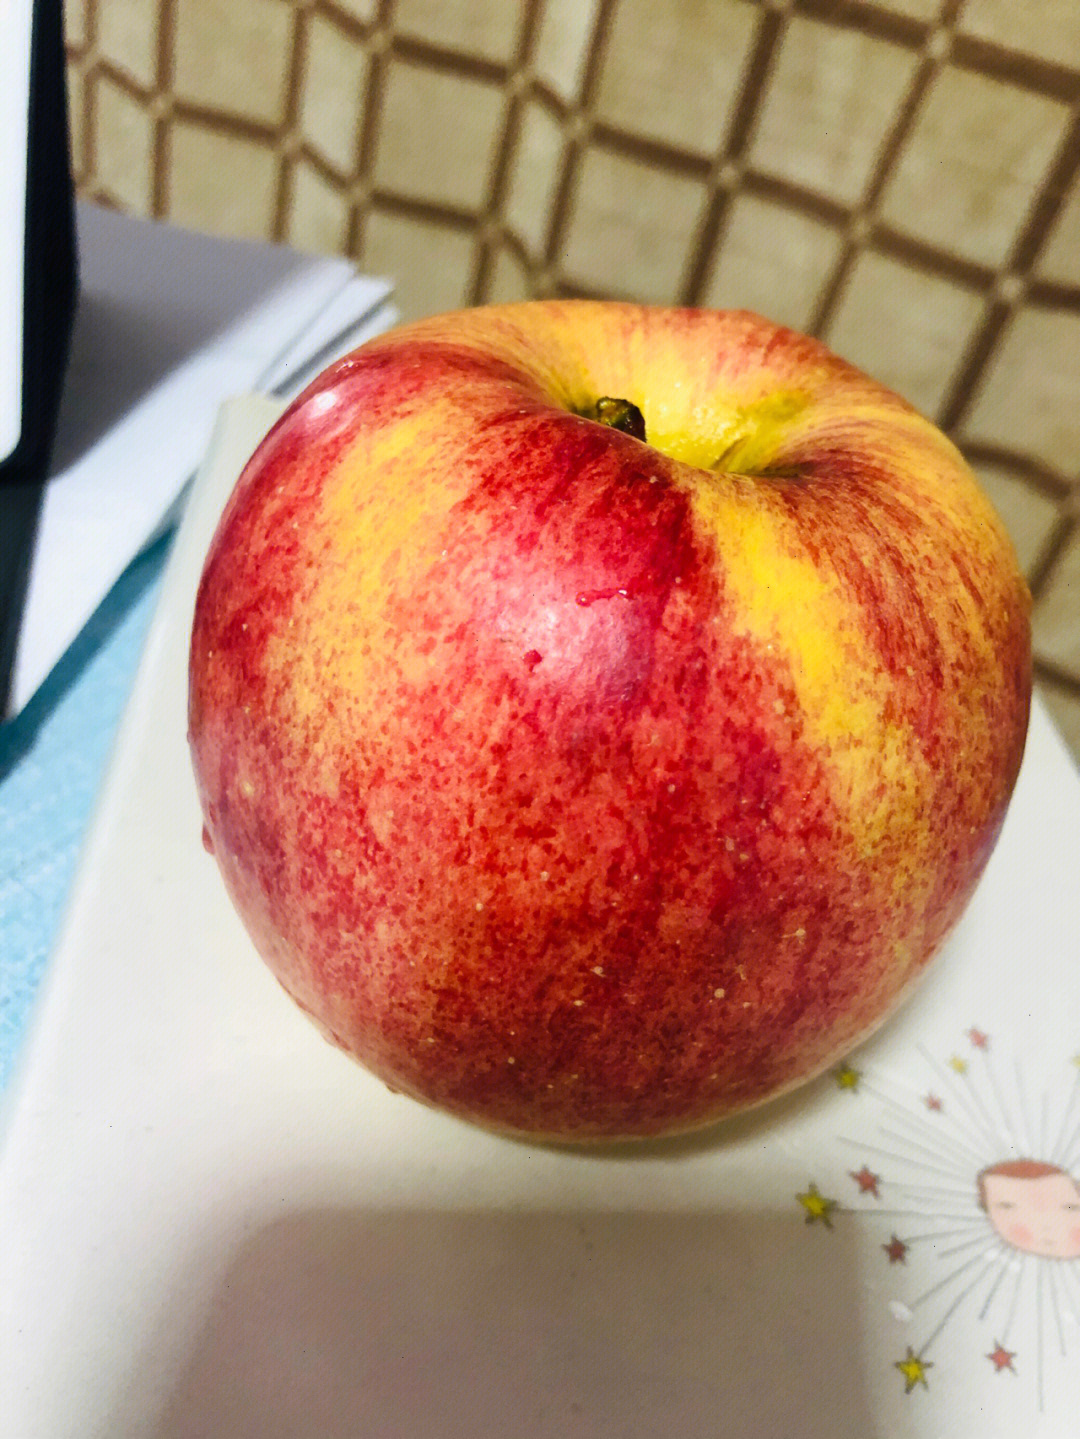 苹果  拼xixi无意间发现的一家水果店,是脆脆的苹果,折合市场价才3块